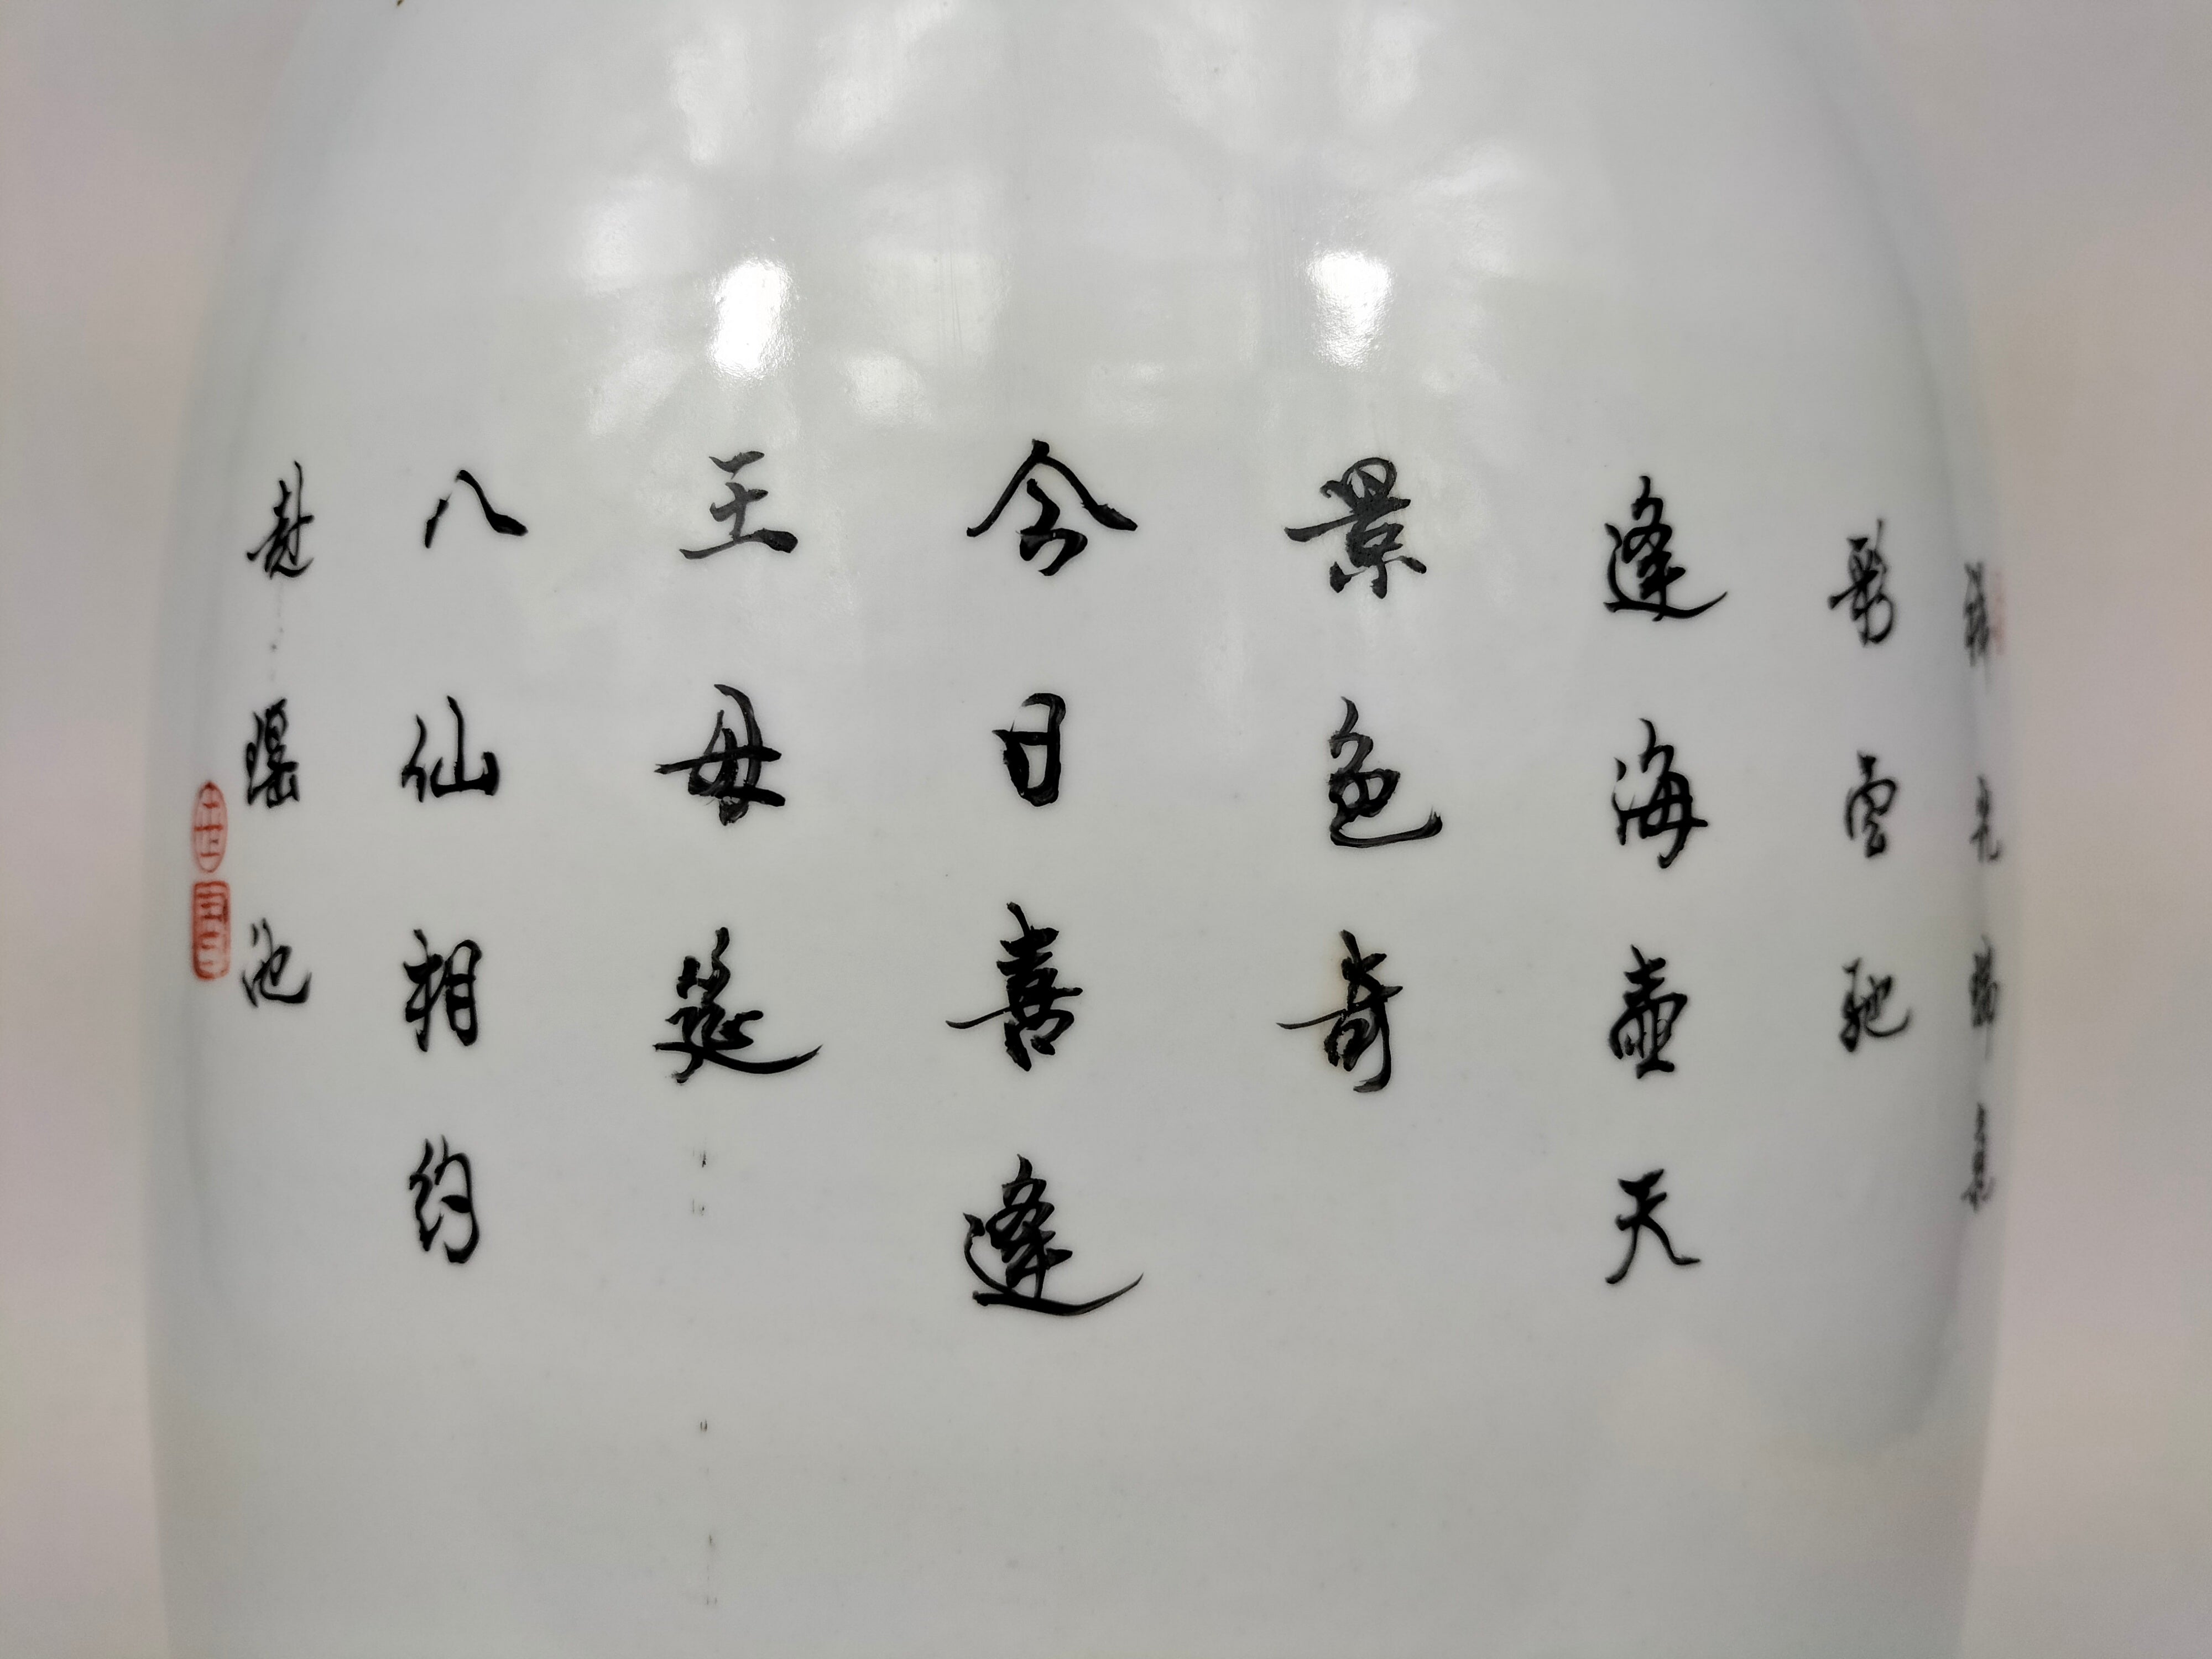 大型中国粉彩花瓶，饰有8 个神仙// 景德镇- 20 世纪– Diddenantiques